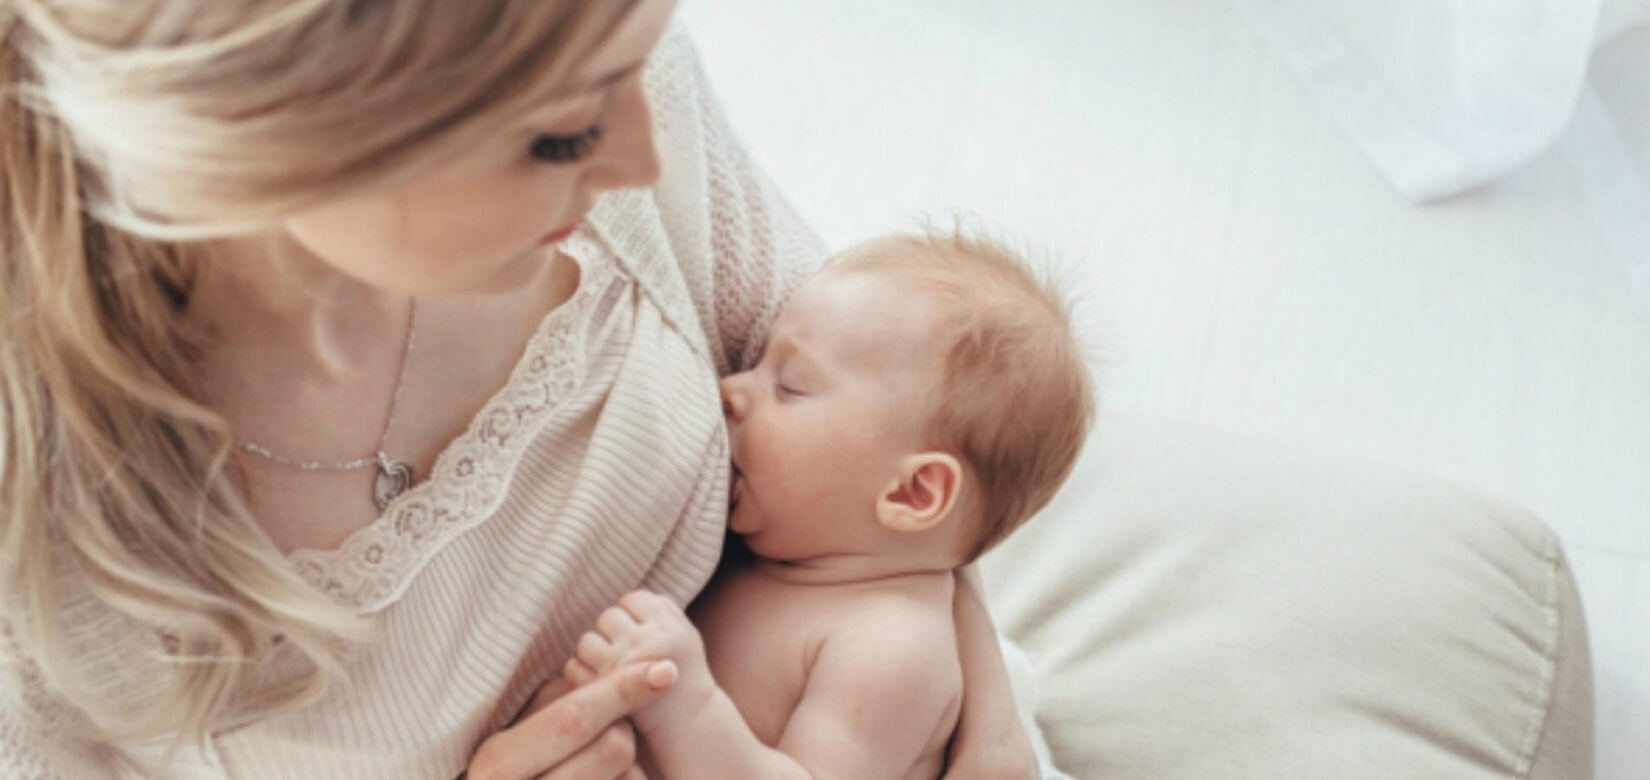 Κορονoϊός - Εμβόλια: Περνούν αντισώματα στο μητρικό γάλα;